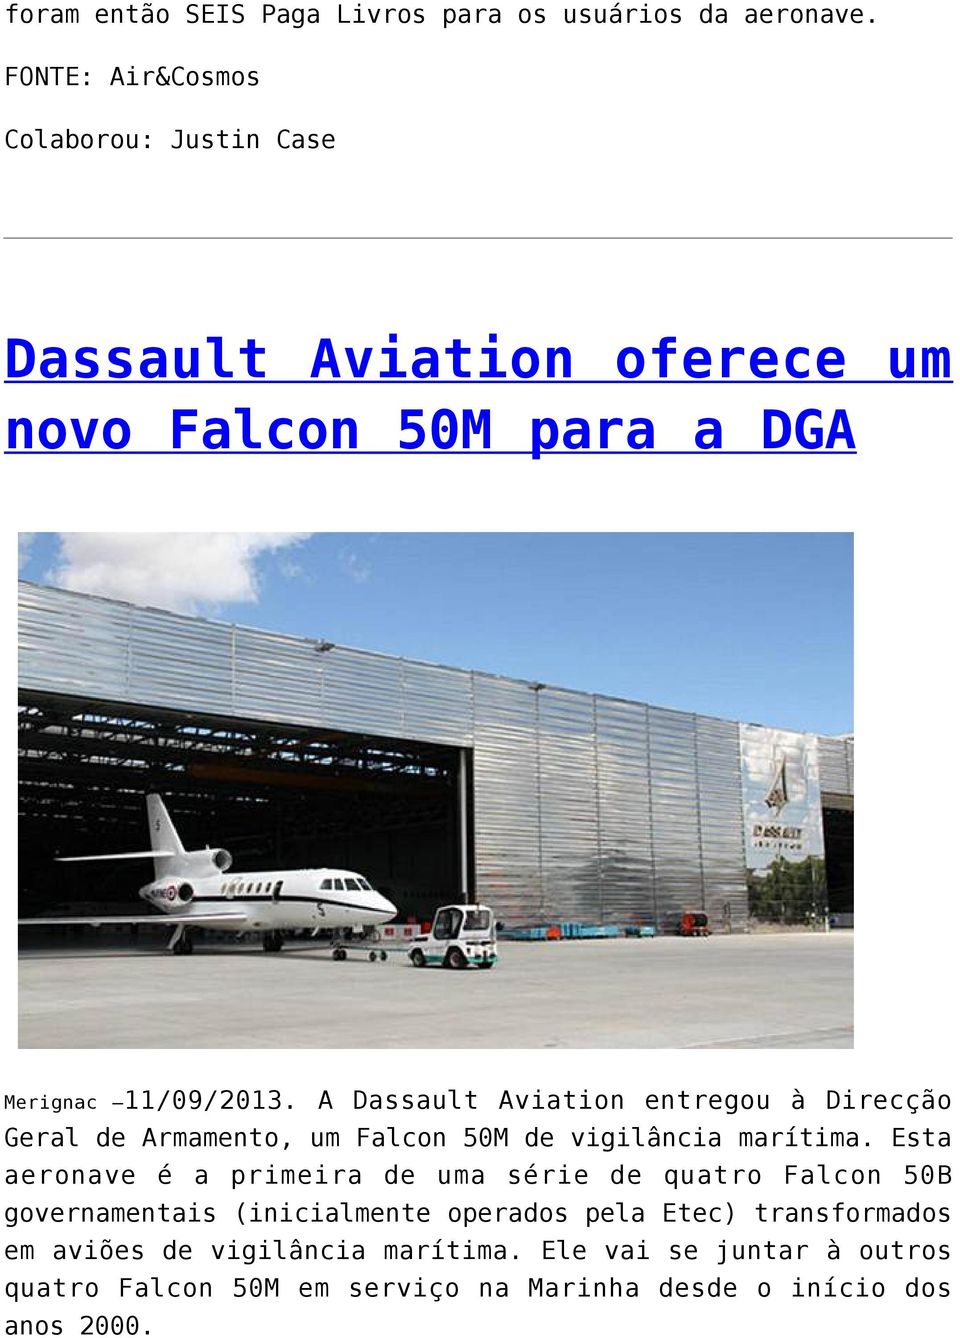 A Dassault Aviation entregou à Direcção Geral de Armamento, um Falcon 50M de vigilância marítima.